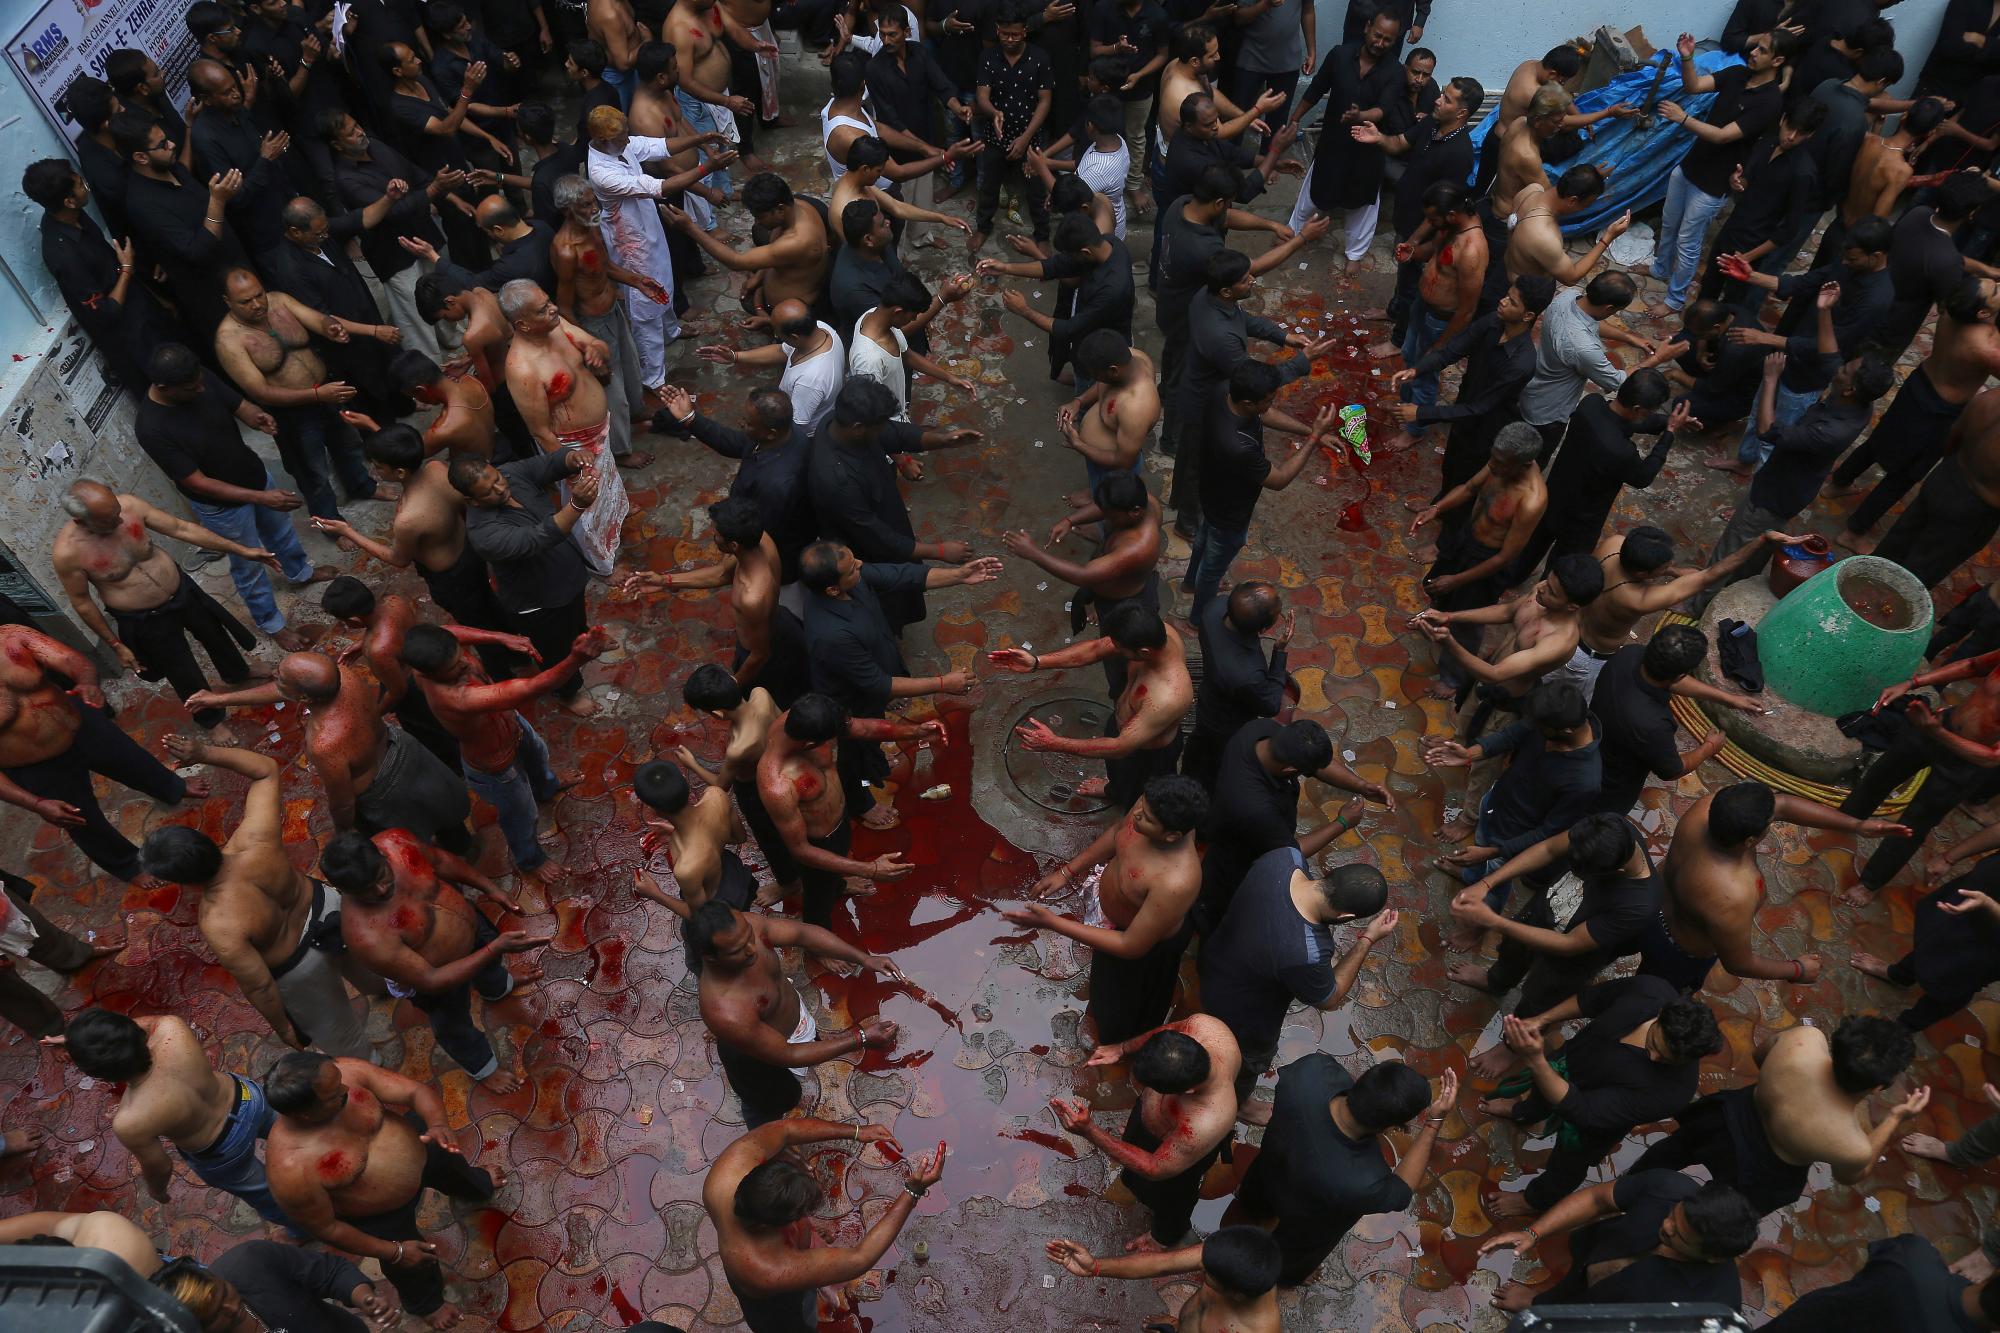 Los musulmanes chiítas indios se flagelan durante una procesión de Ashoura en Hyderabad, India, el martes 10 de septiembre de 2019. Ashoura cae en el décimo día de Muharram, el primer mes del calendario islámico, cuando los chiítas marcan la muerte de Hussein, el nieto de el profeta Mahoma, en la batalla de Karbala en el actual Iraq en el siglo VII.